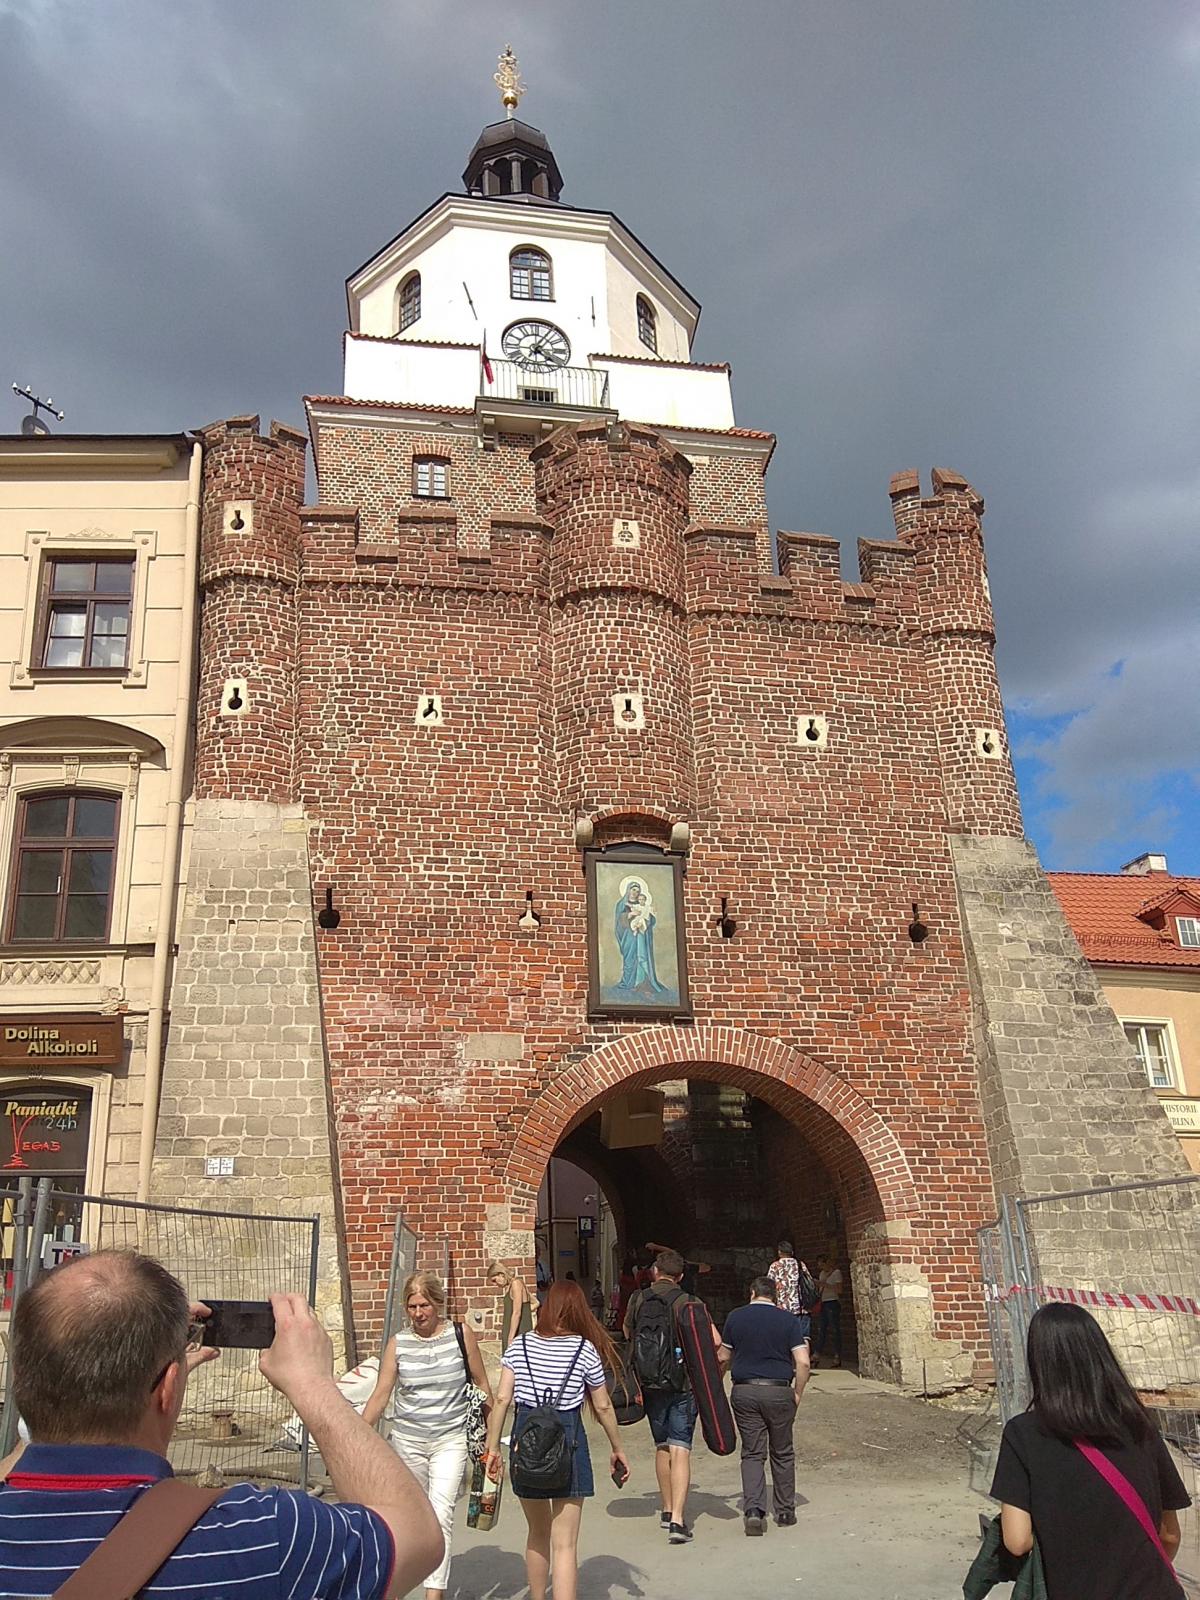 Краковские ворота - один из символов города / фото Варвара Вайс